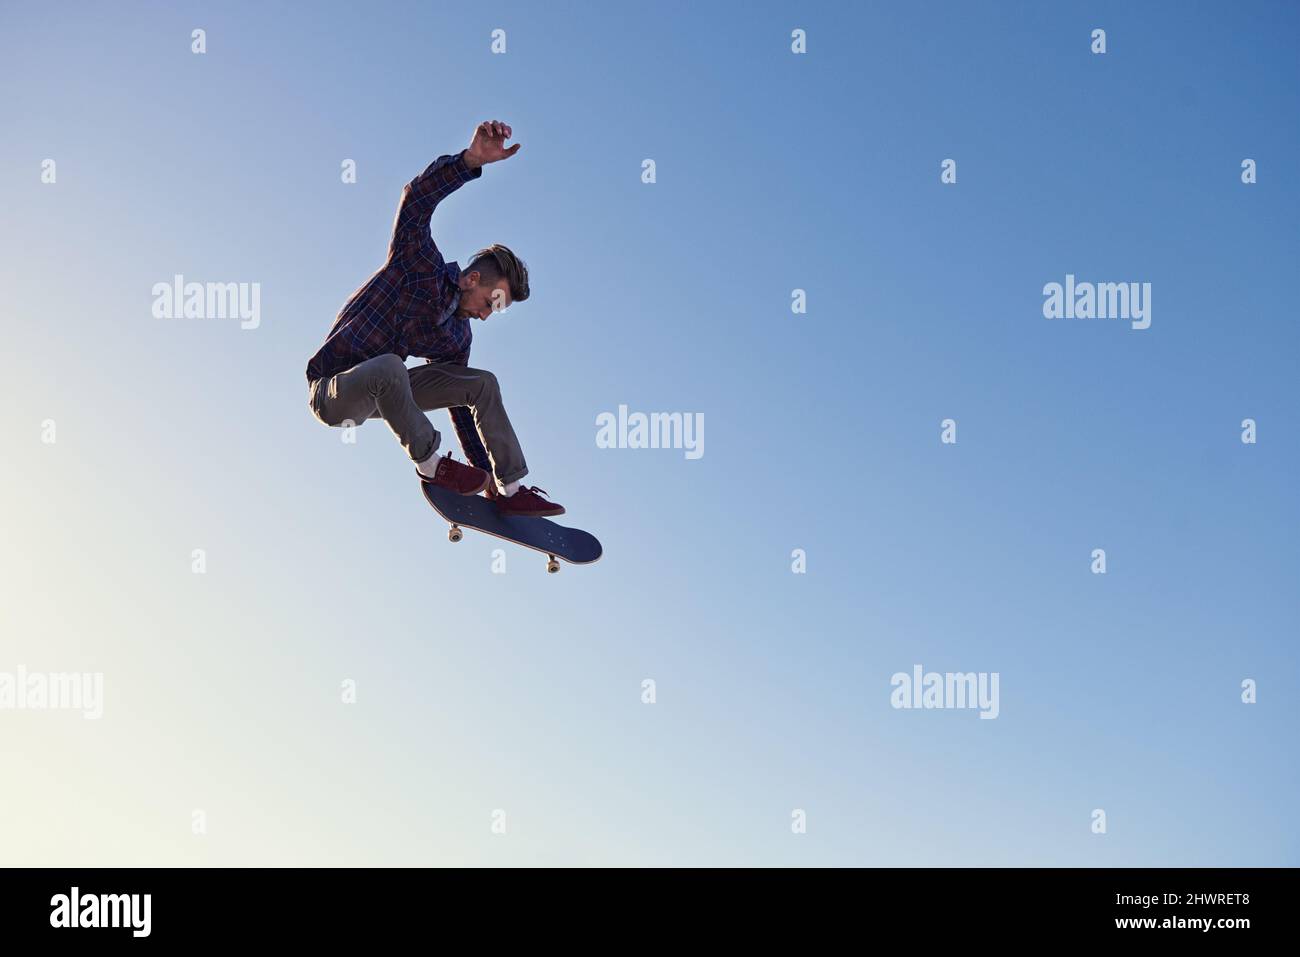 Un jour de rad au skate Park. Un jeune homme qui fait des tours sur son skateboard au skate Park. Banque D'Images